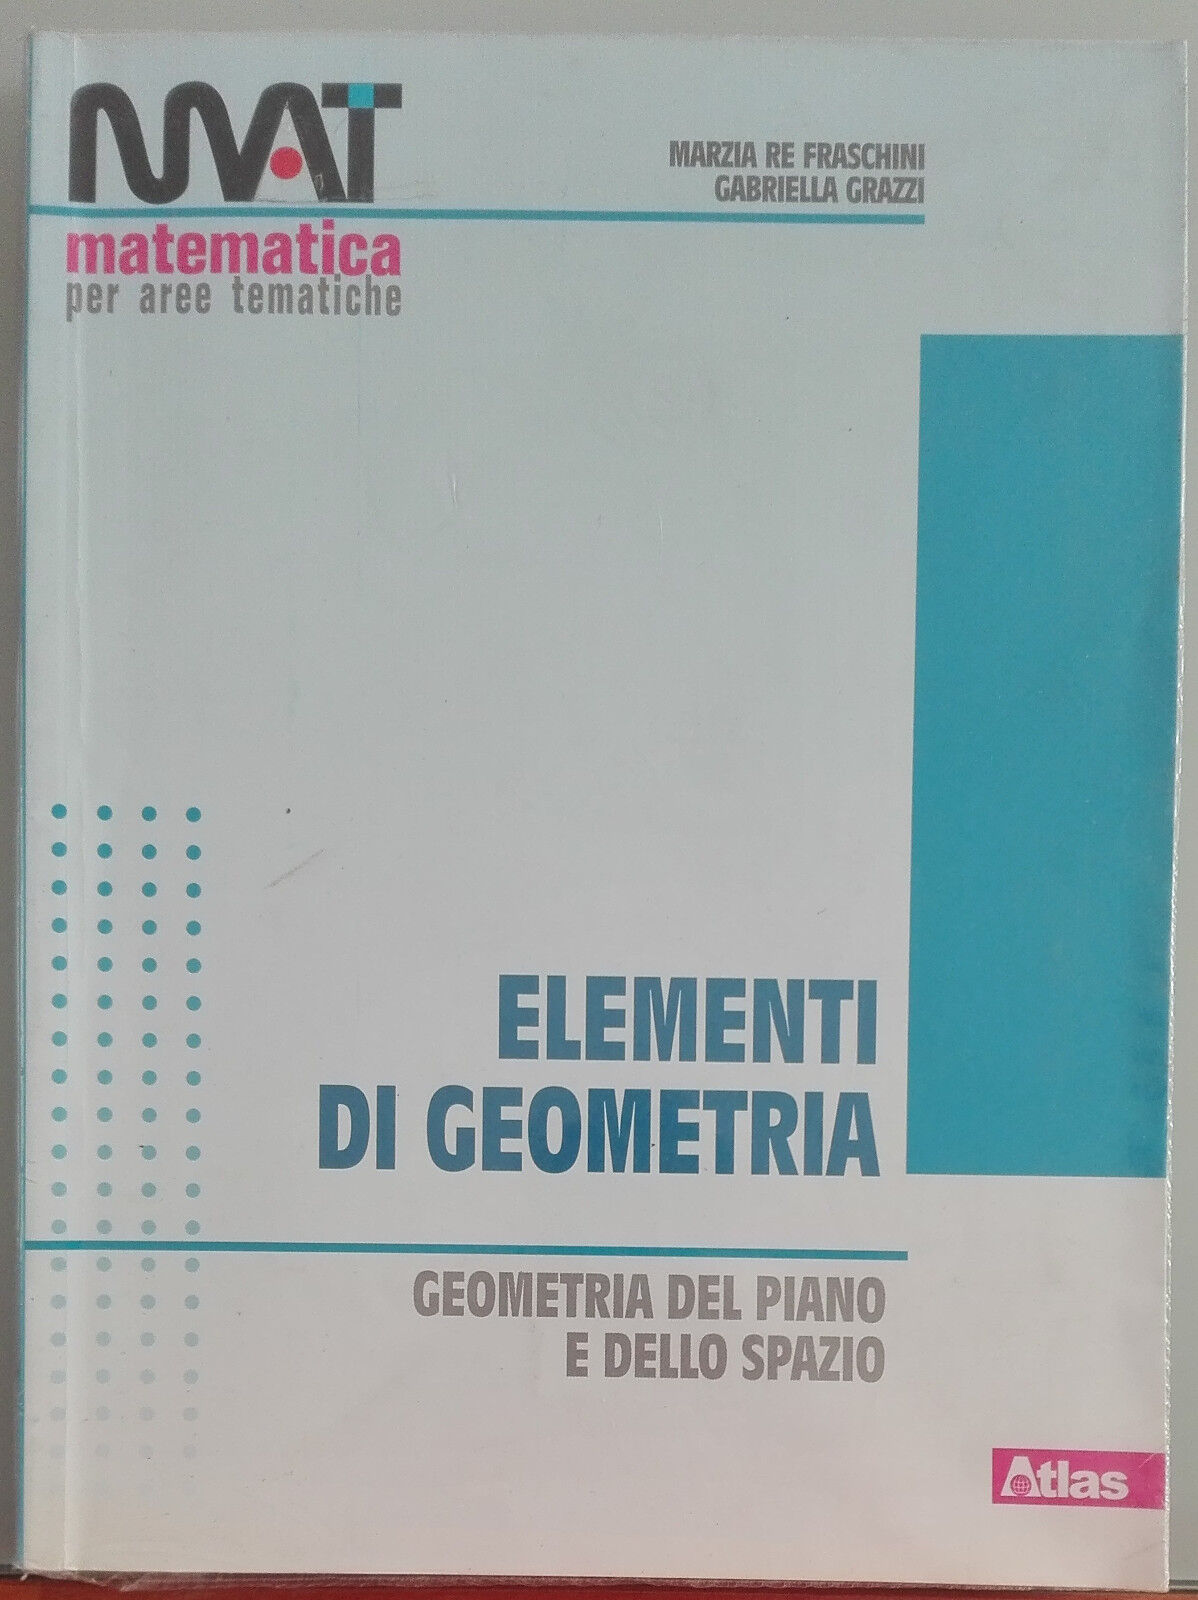 Elementi di geometria - Marzia Re Fraschini, Gabriella Grazzi - Atlas,2013 - A libro usato